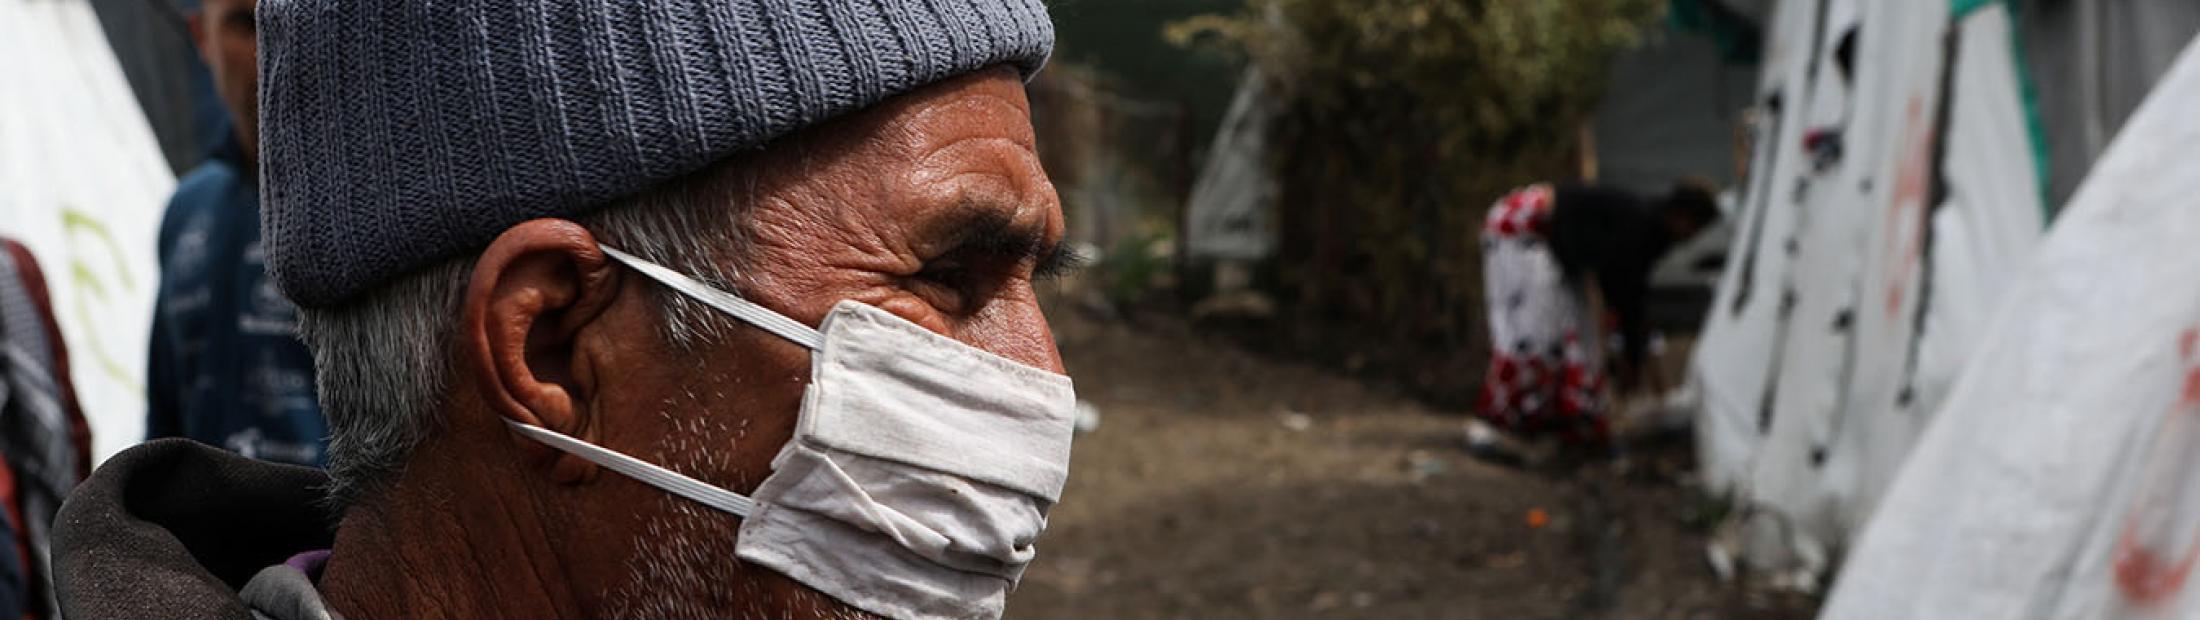 El coronavirus llega a dos asentamientos de refugiados en Grecia